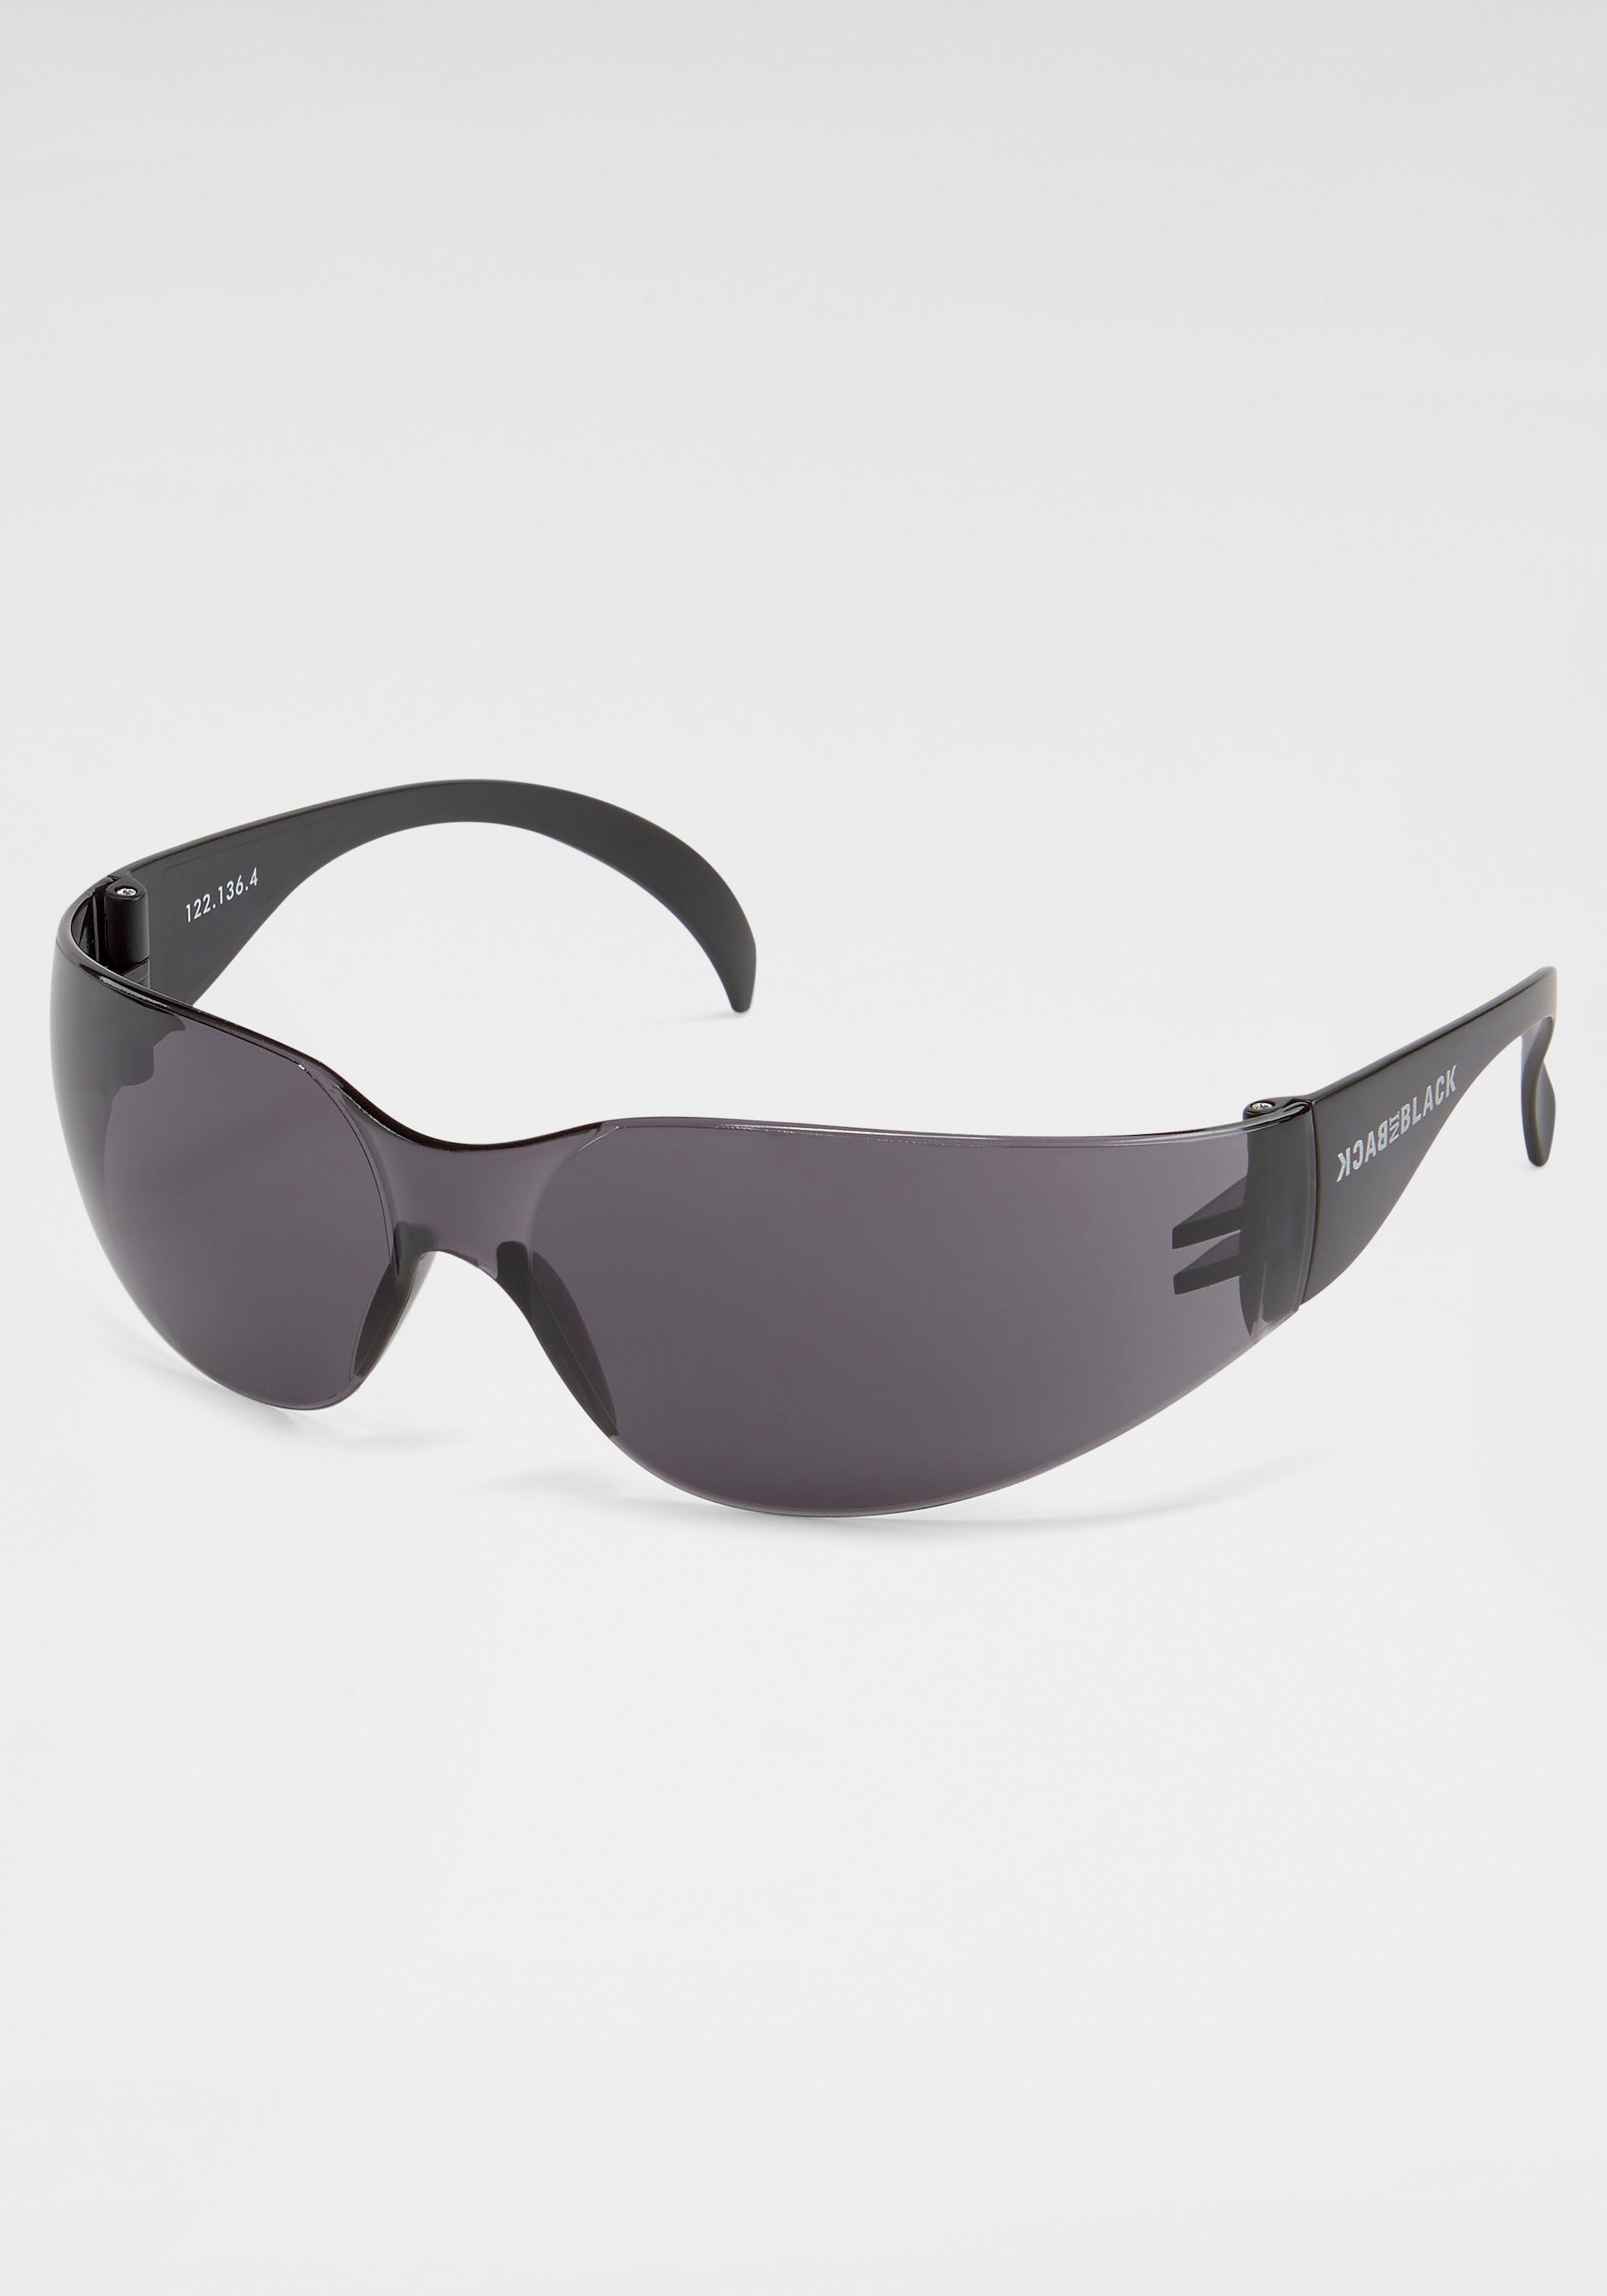 BACK IN BLACK Eyewear Sonnenbrille, Randlos für kaufen | BAUR